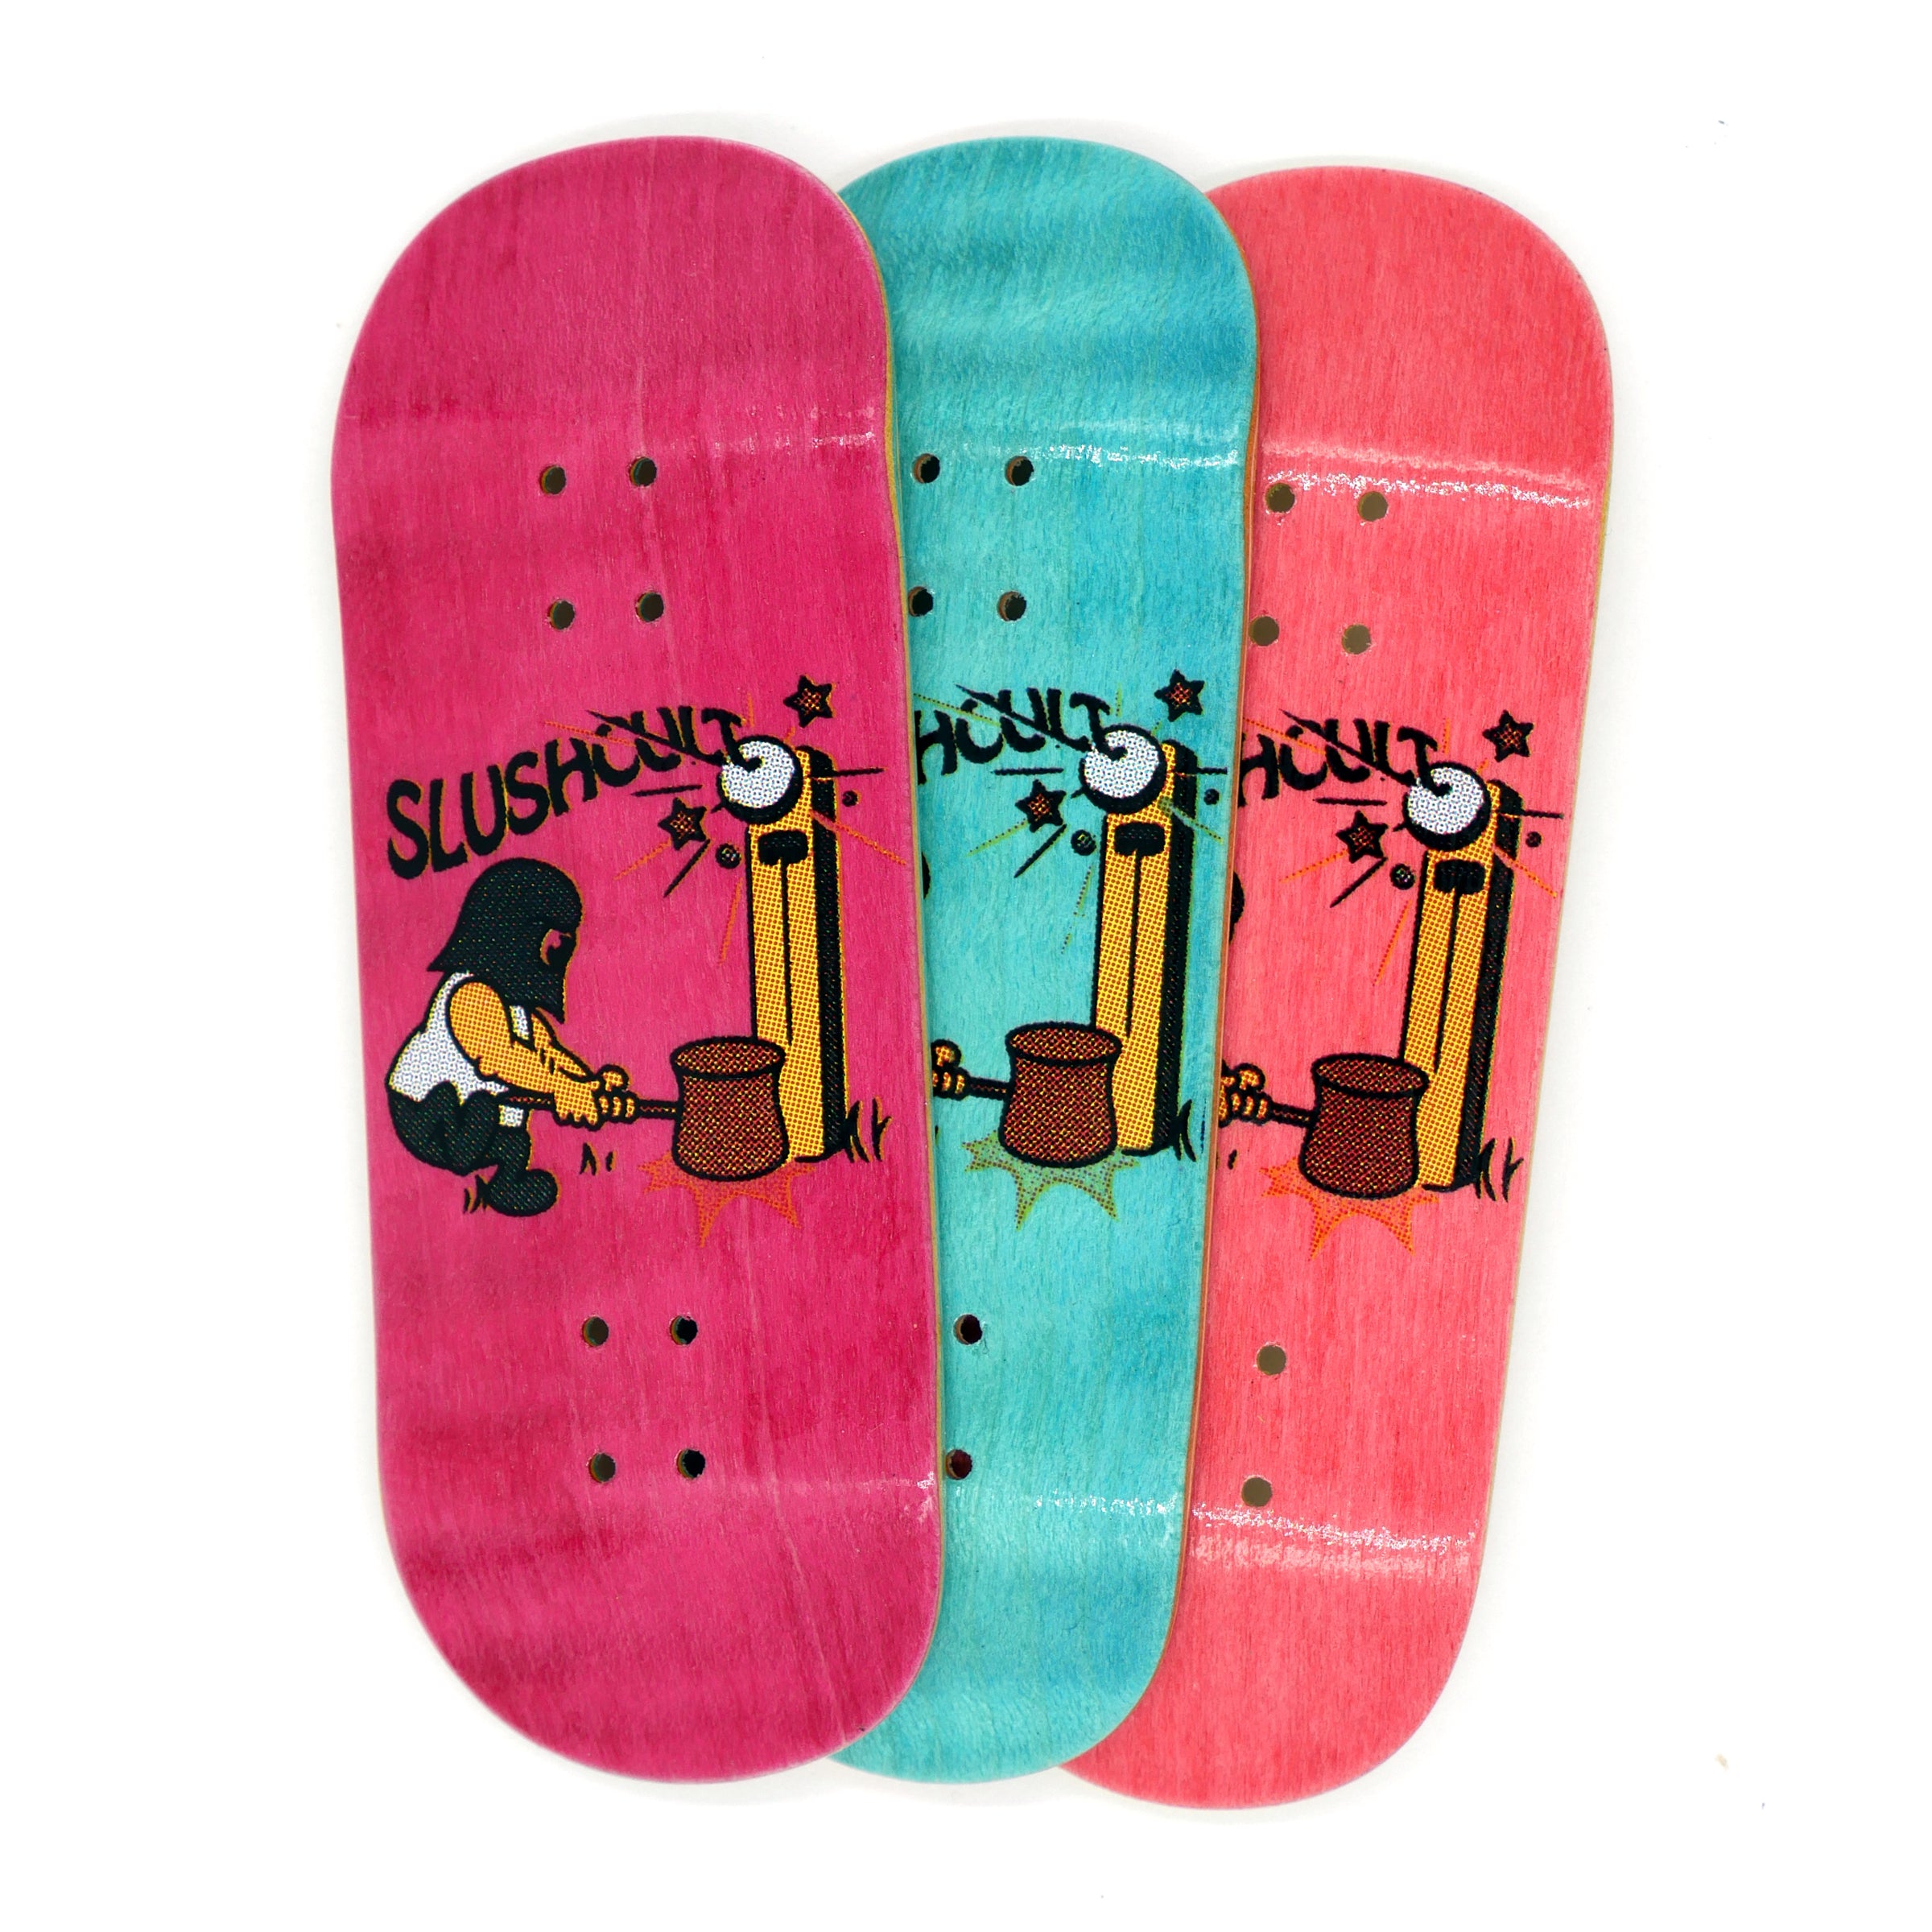 Slushcult "Hi Striker" Shop Fingerboard Deck MINI Skate Shop Slushcult    Slushcult